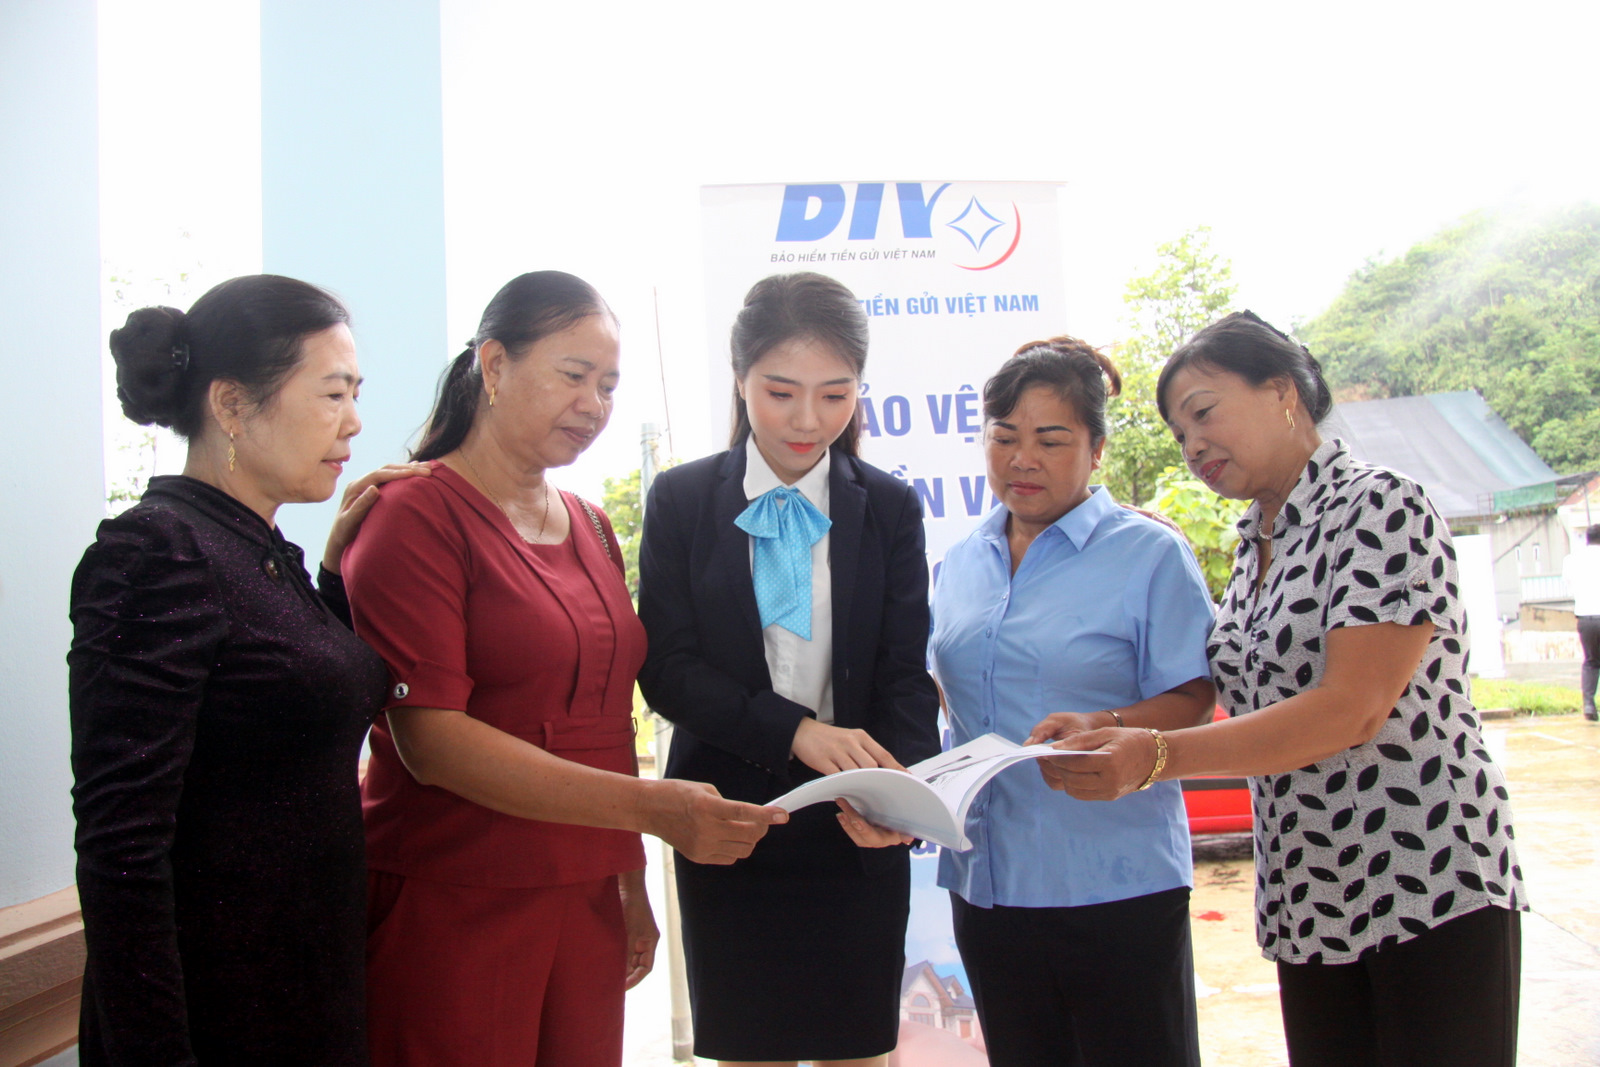 Cán bộ Chi nhánh Bảo hiểm tiền gửi Việt Nam khu vực vực Tây Bắc Bộ tuyên truyền chính sách Bảo hiểm tiền gửi đến khách hàng.